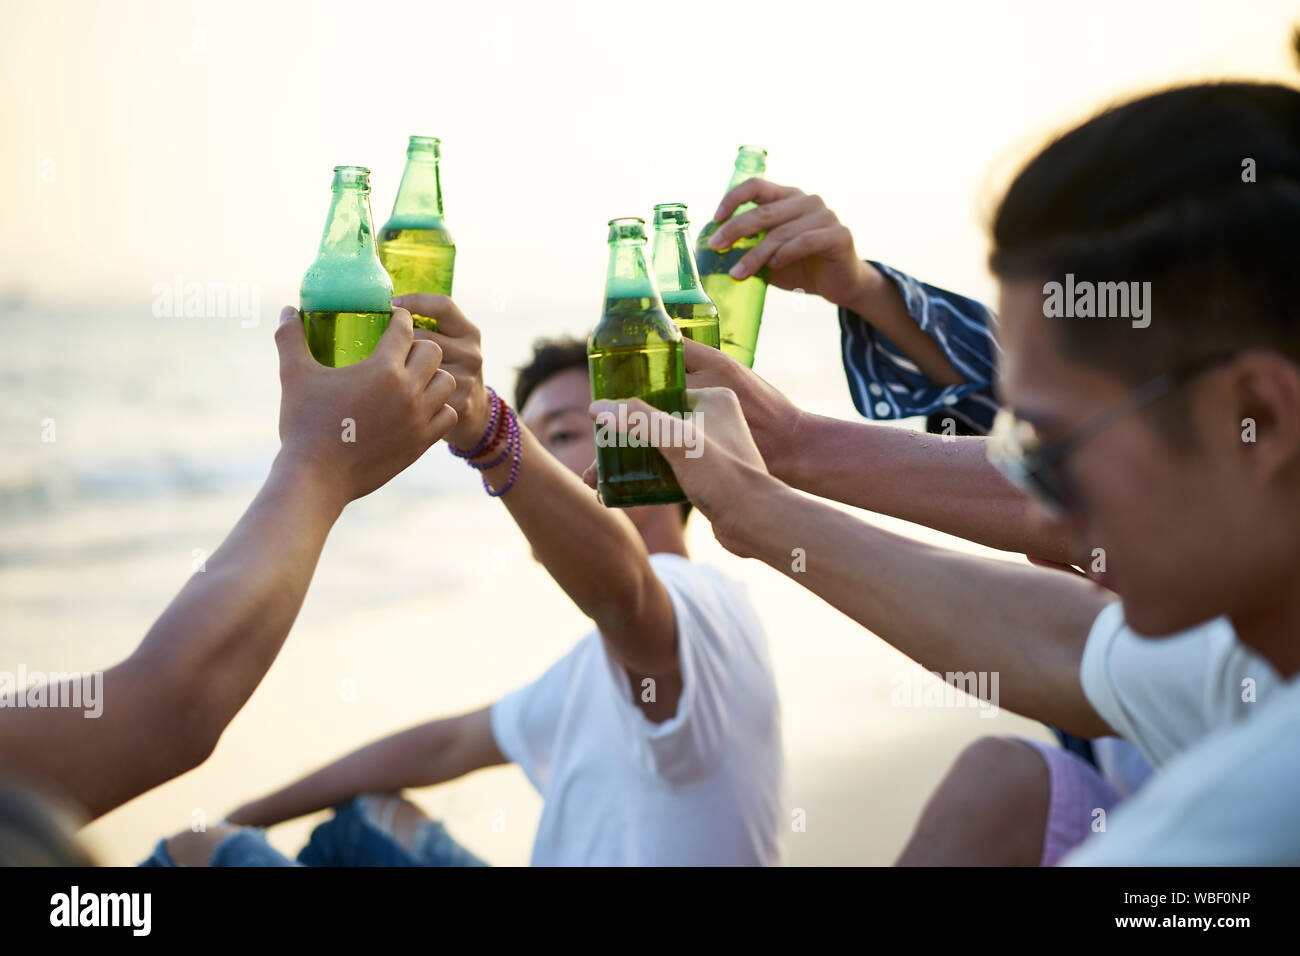 Groupe de jeunes hommes adultes asiatiques bière potable bouteilles en cliquant sur grillage beach Banque D'Images